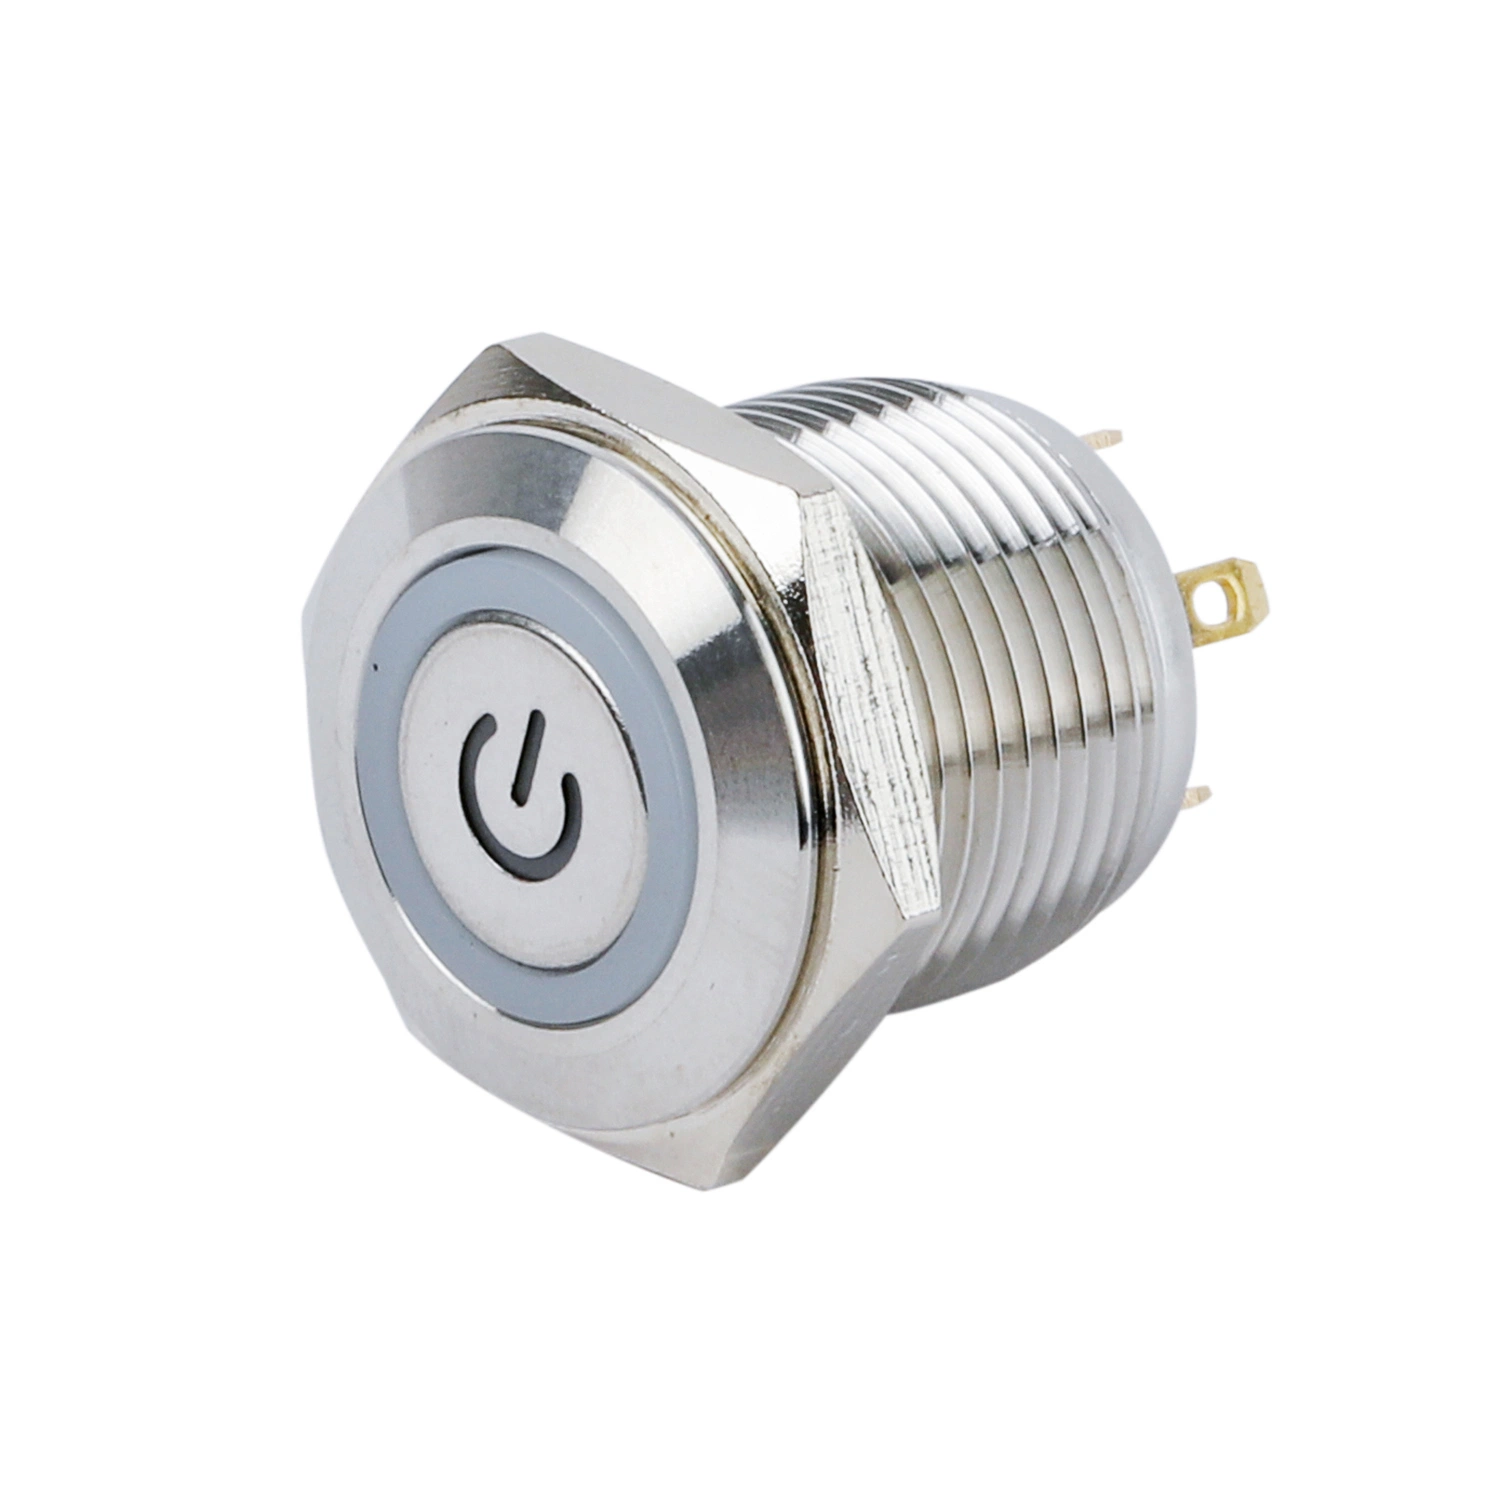 Qn16-D8 16мм символ светится типа без фиксации с плоской головкой Контакт водонепроницаемые металлические кнопочный выключатель